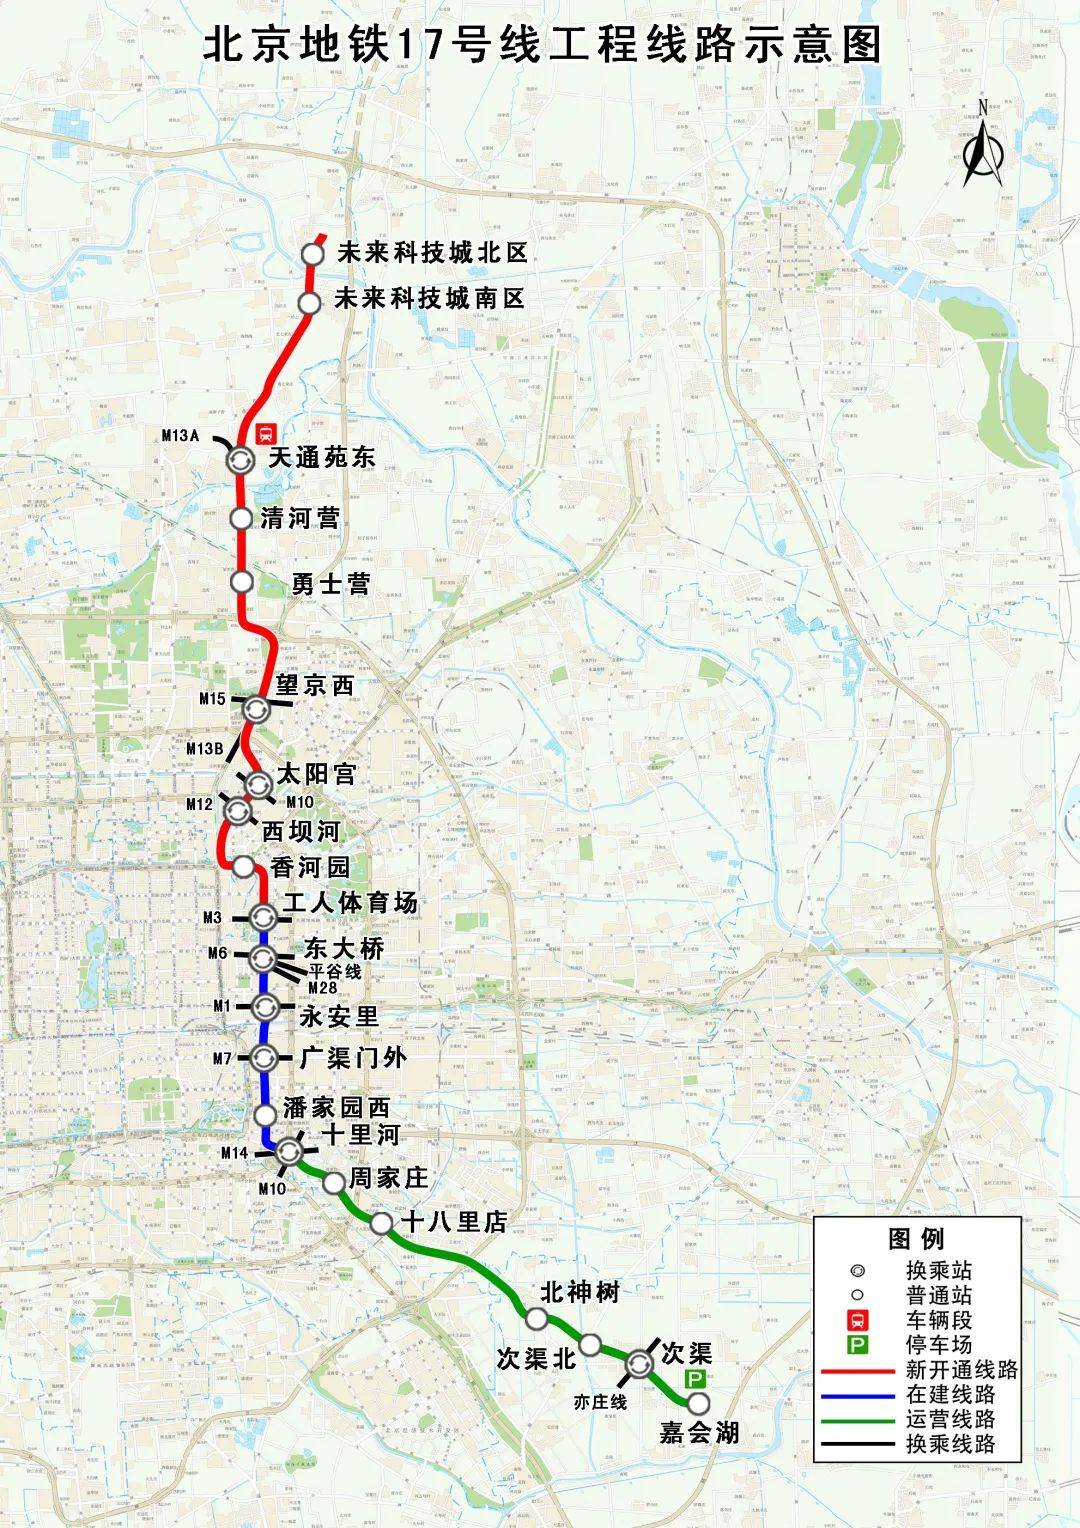 今年北京将开通2条地铁线!1号线支线开工——